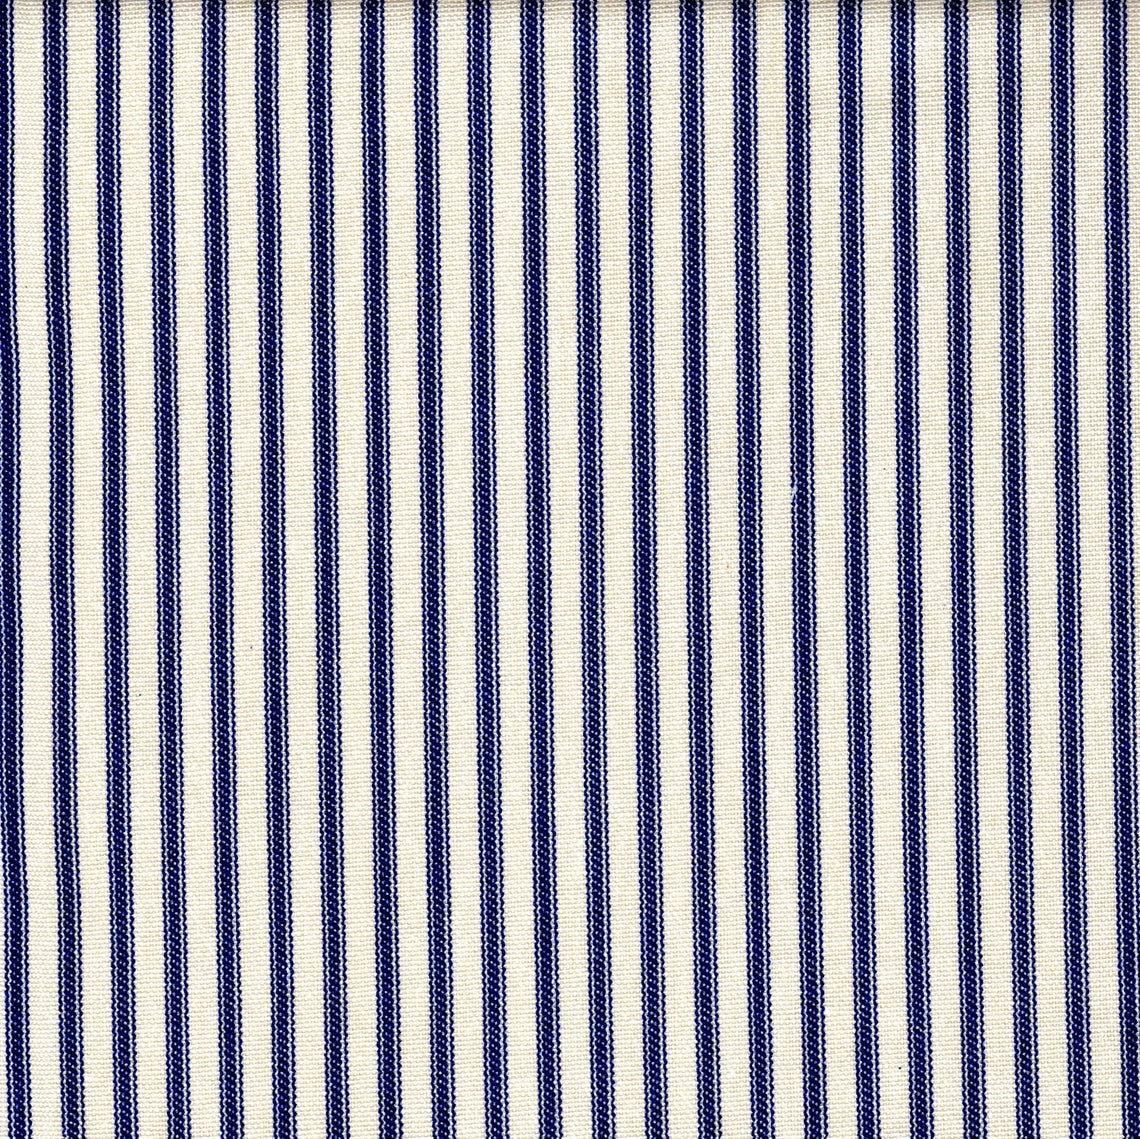 tie-up valance in farmhouse dark blue ticking stripe on cream